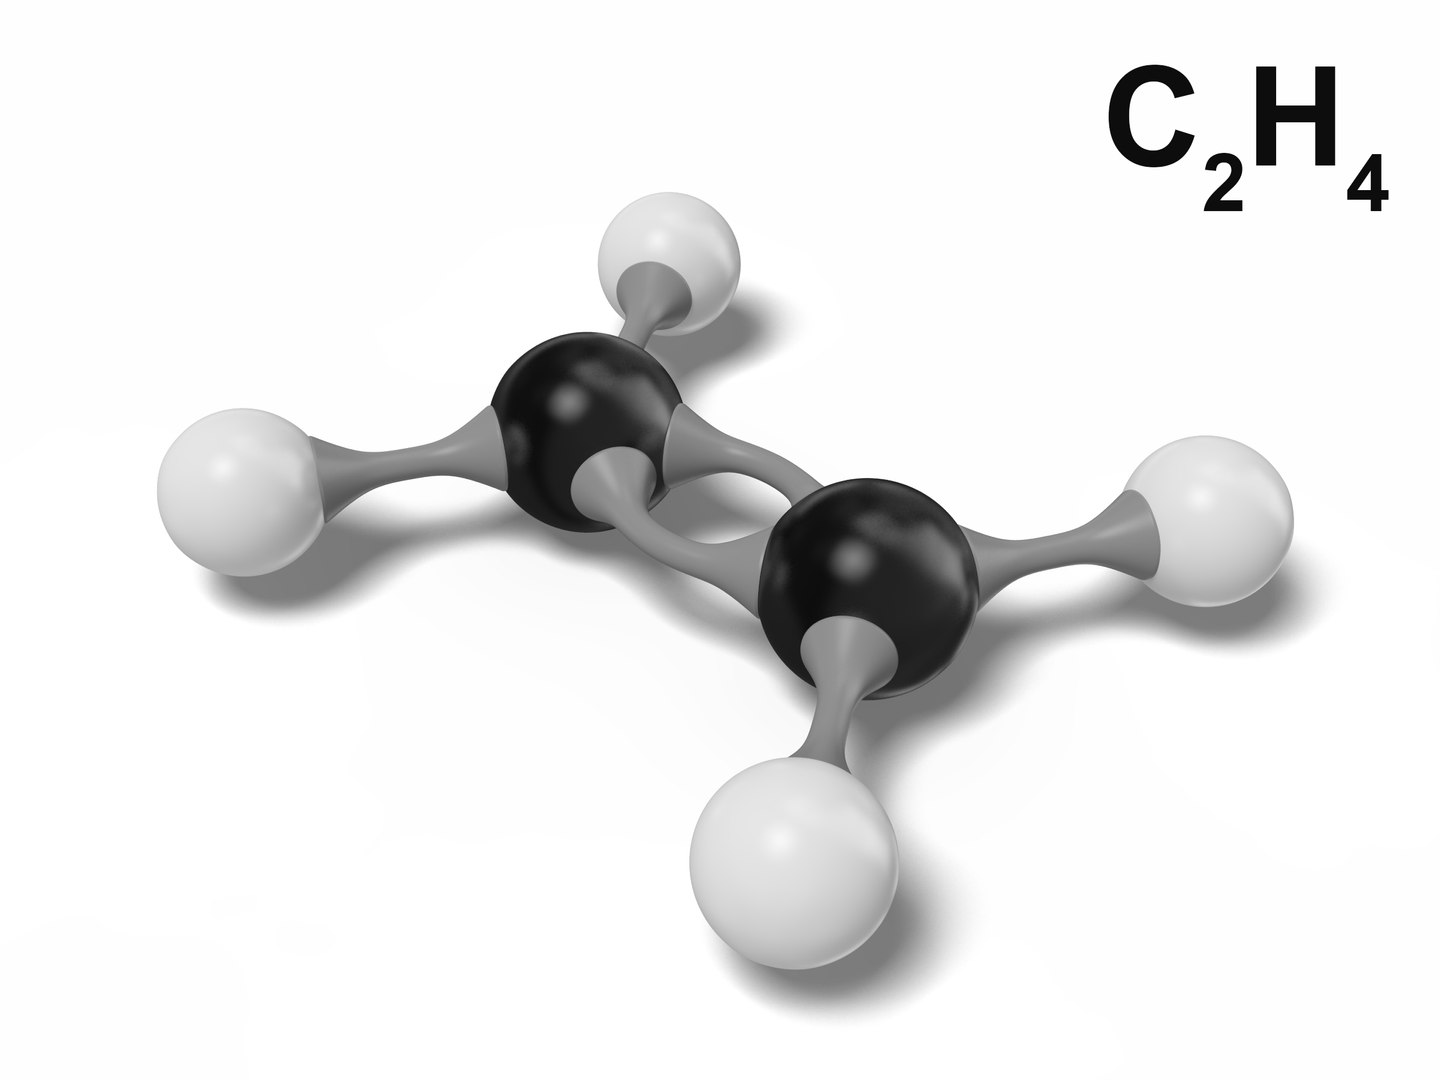 ch2ch2 molecular geometry